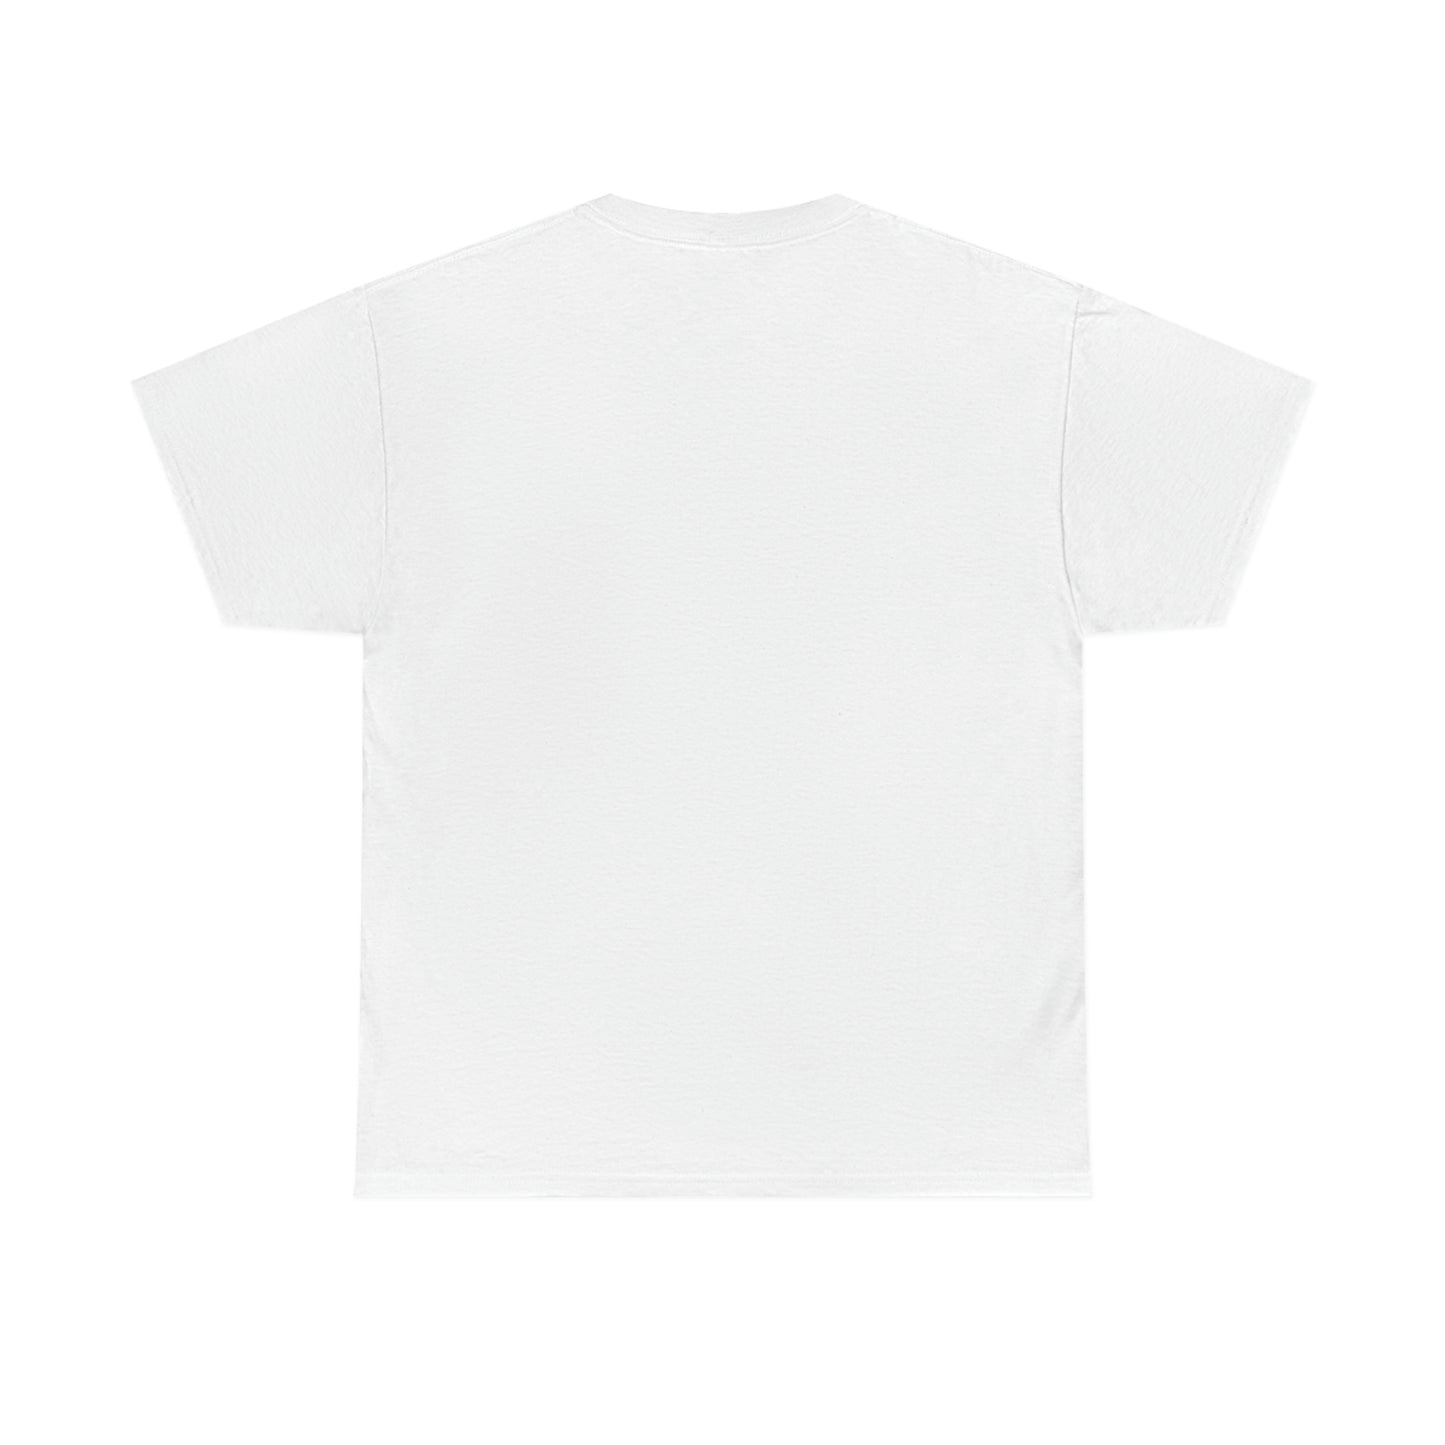 Terrific Unisex Cotton T-shirt